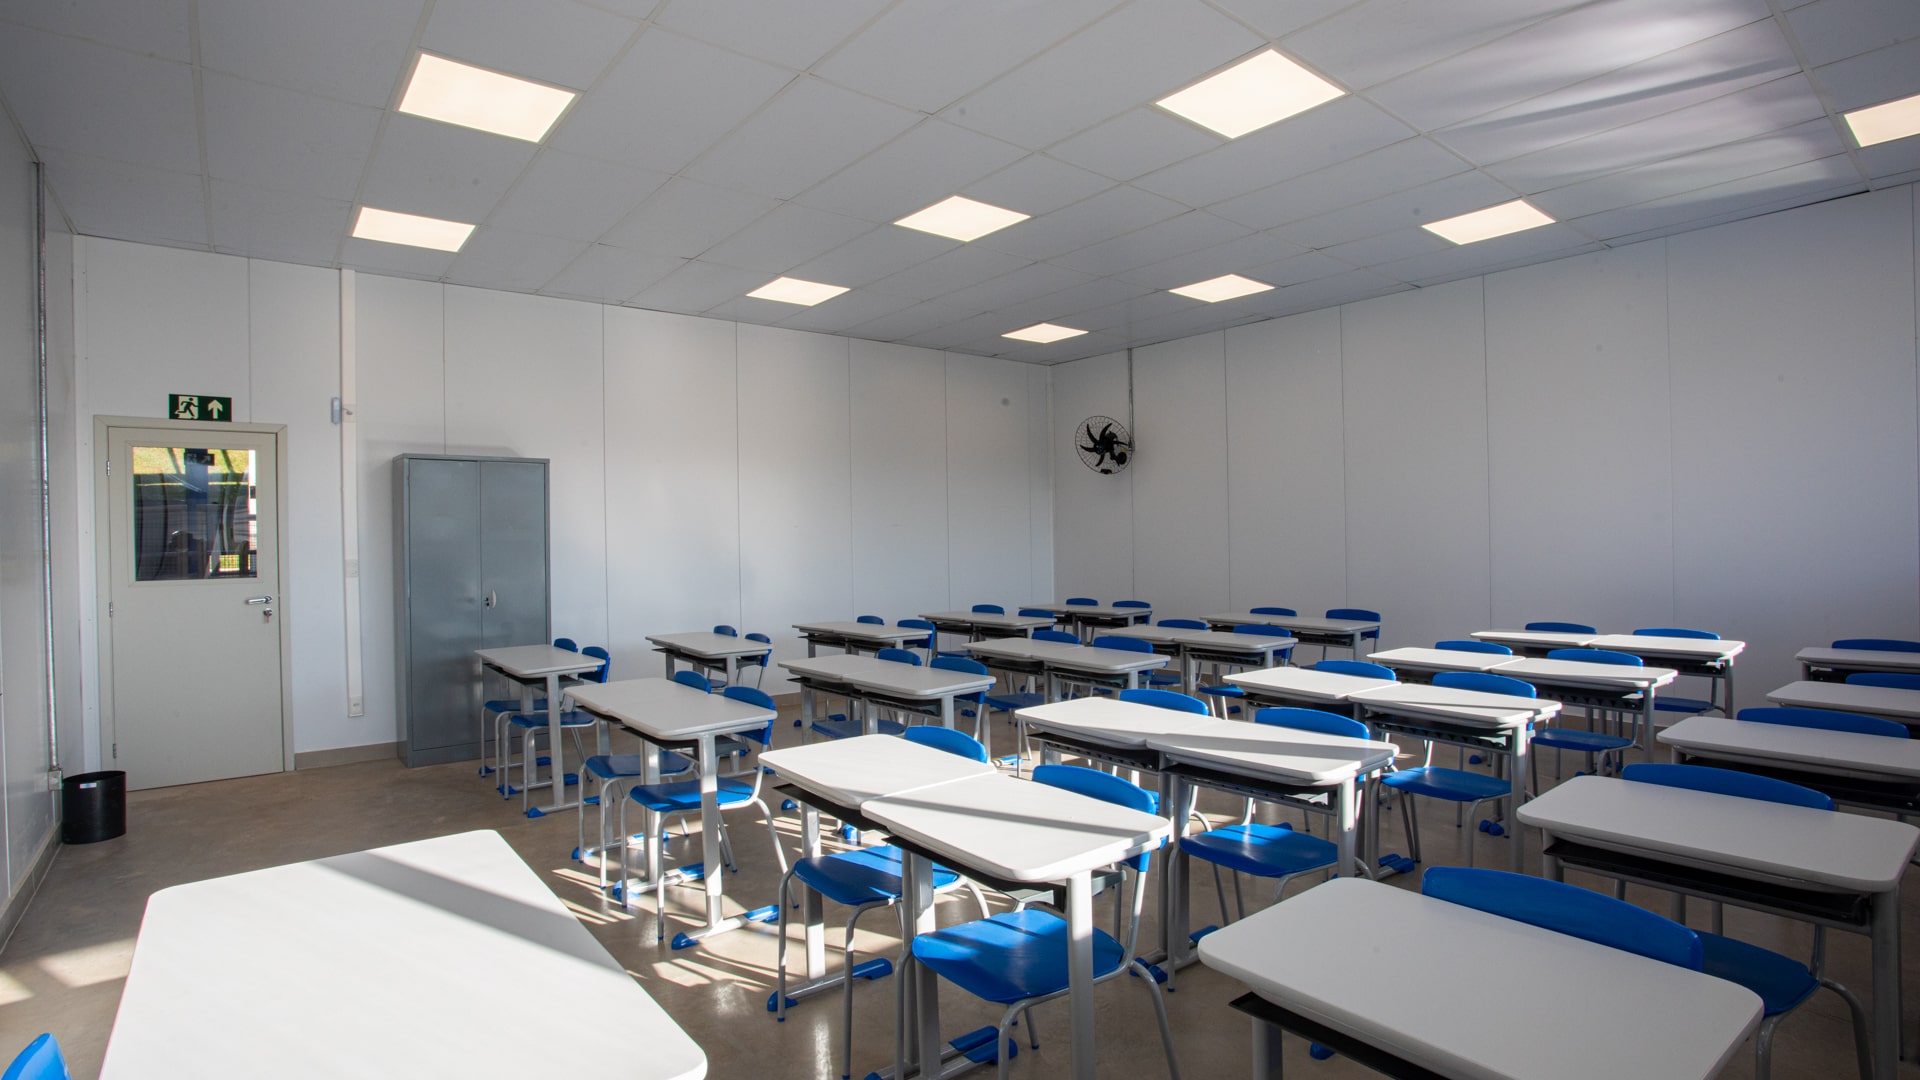 Diversas mesas e cadeiras dispostas lado a lado em uma sala de aula. Há um pequeno armário e um ventilador na parede.